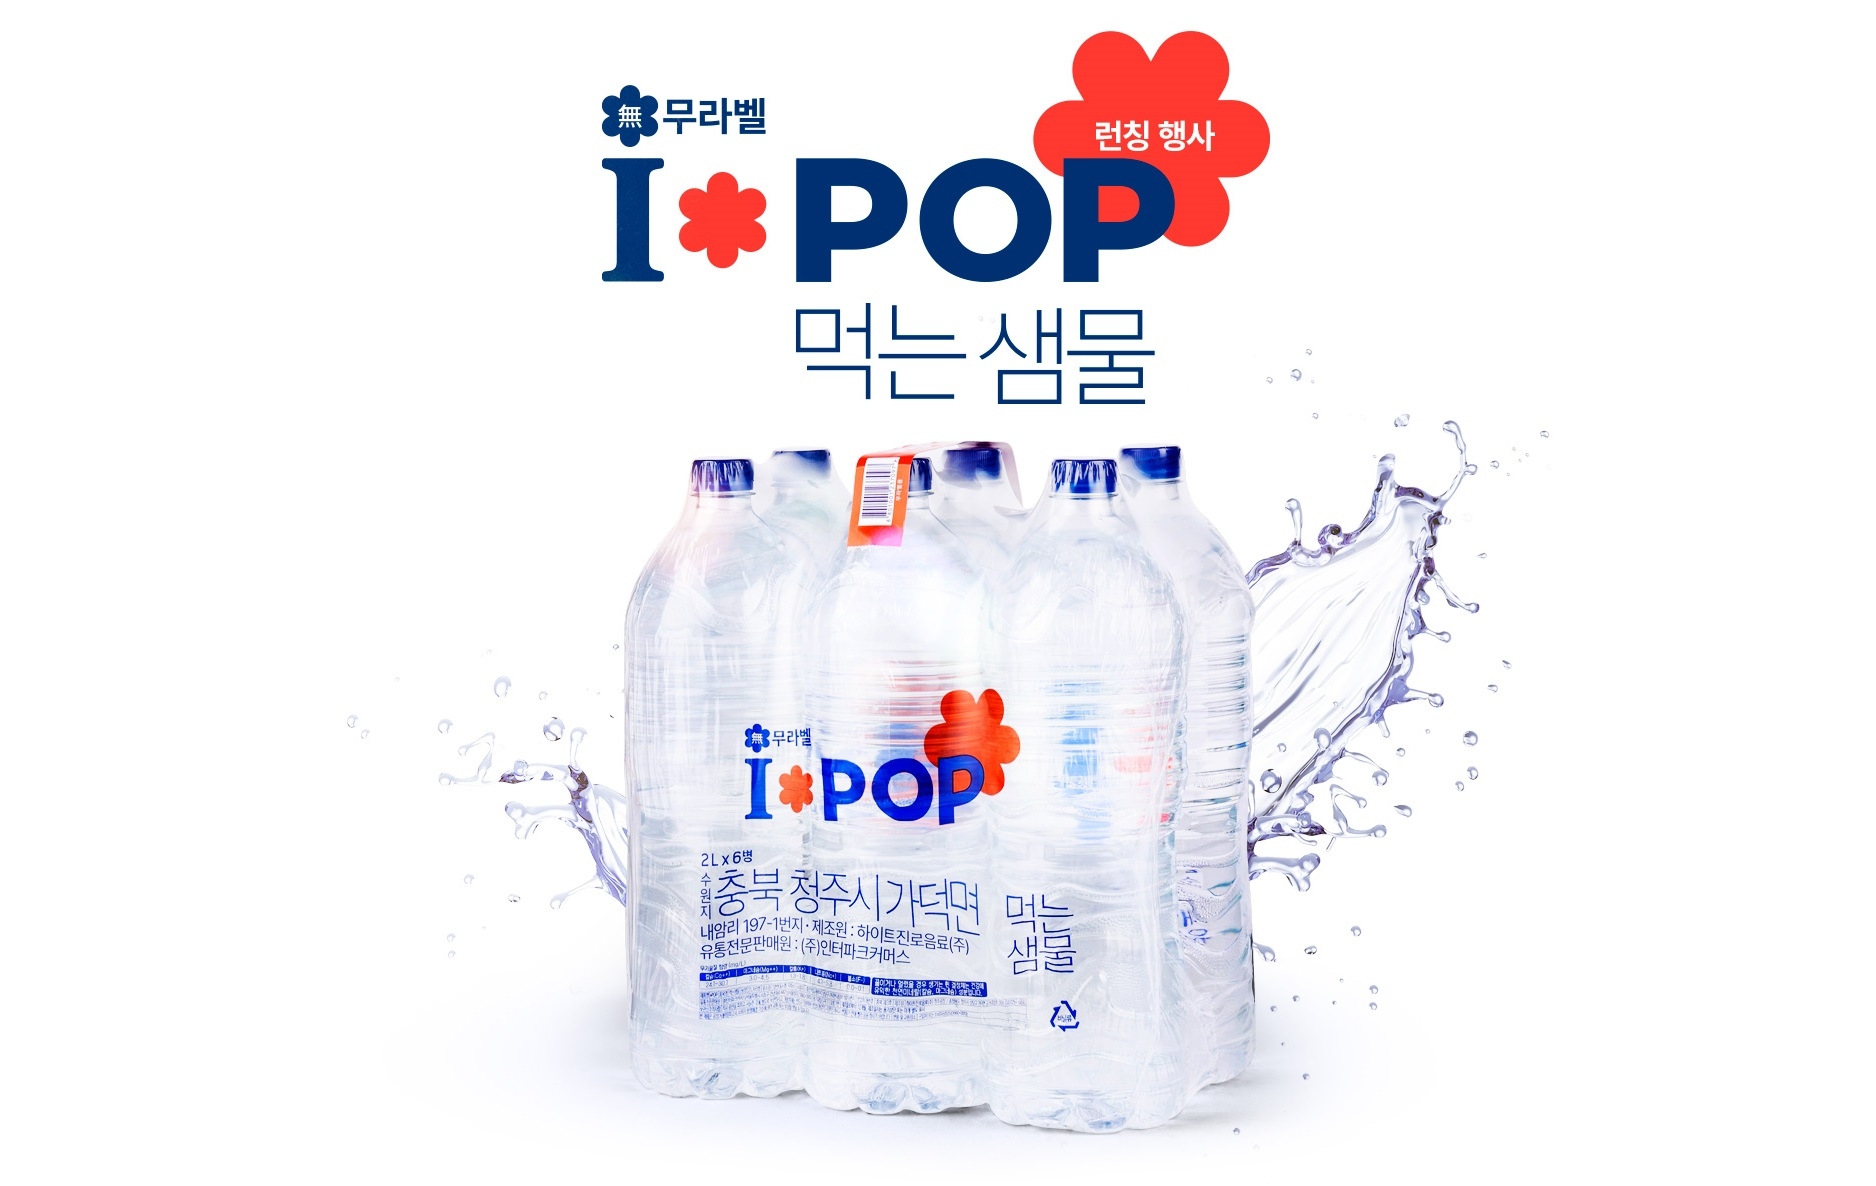 [생활경제 이슈] 인터파크쇼핑 I*POP 브랜드 론칭, 첫 PB상품으로 먹는 샘물 출시 外